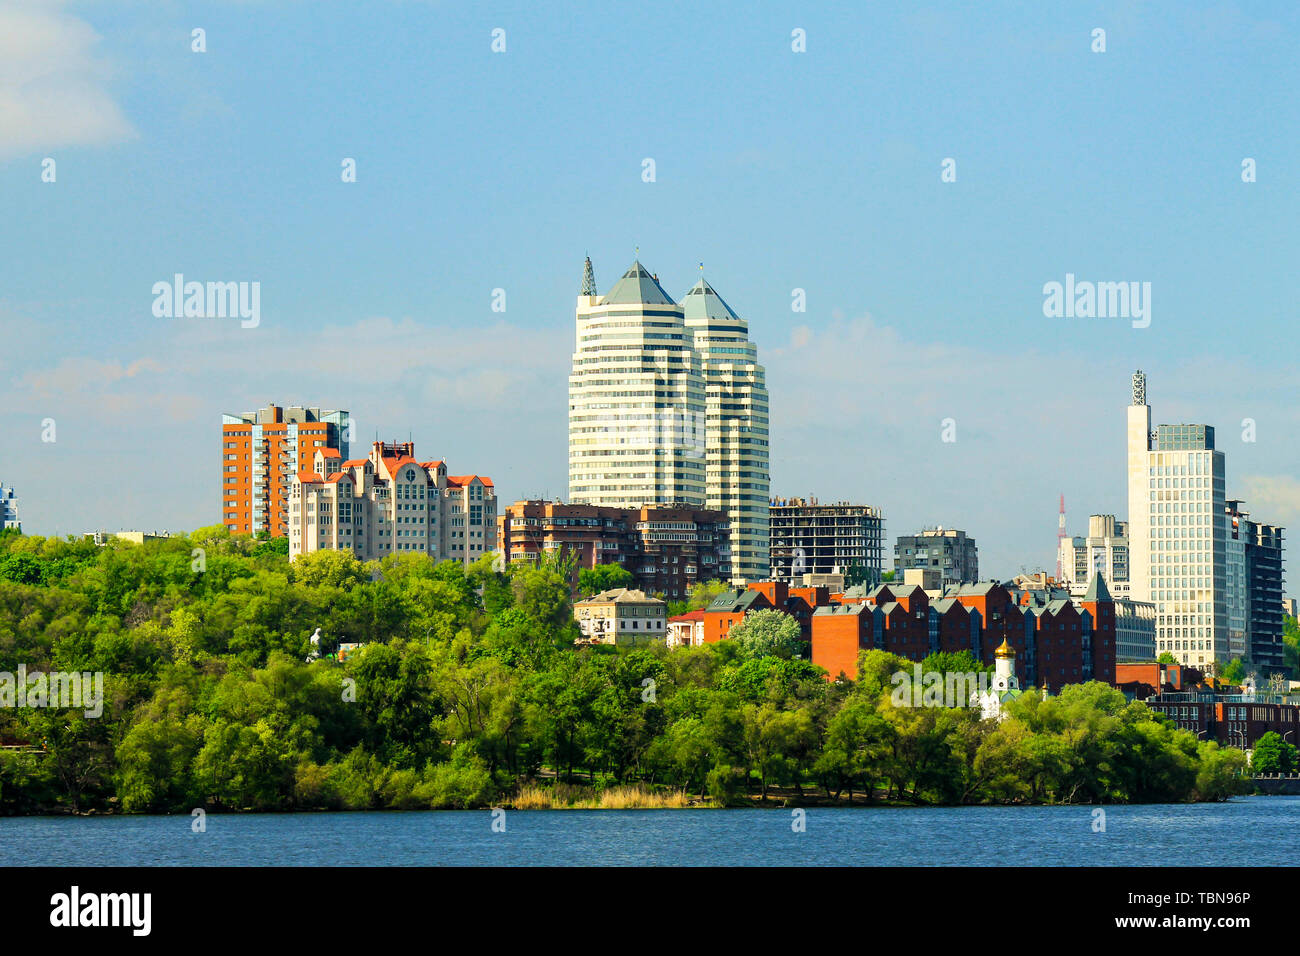 Belles tours, immeubles et gratte-ciel dans la rivière au début de l'été matin. Ville de Dnepropetrovsk, Ukraine Dnipro, printemps cityscape Banque D'Images